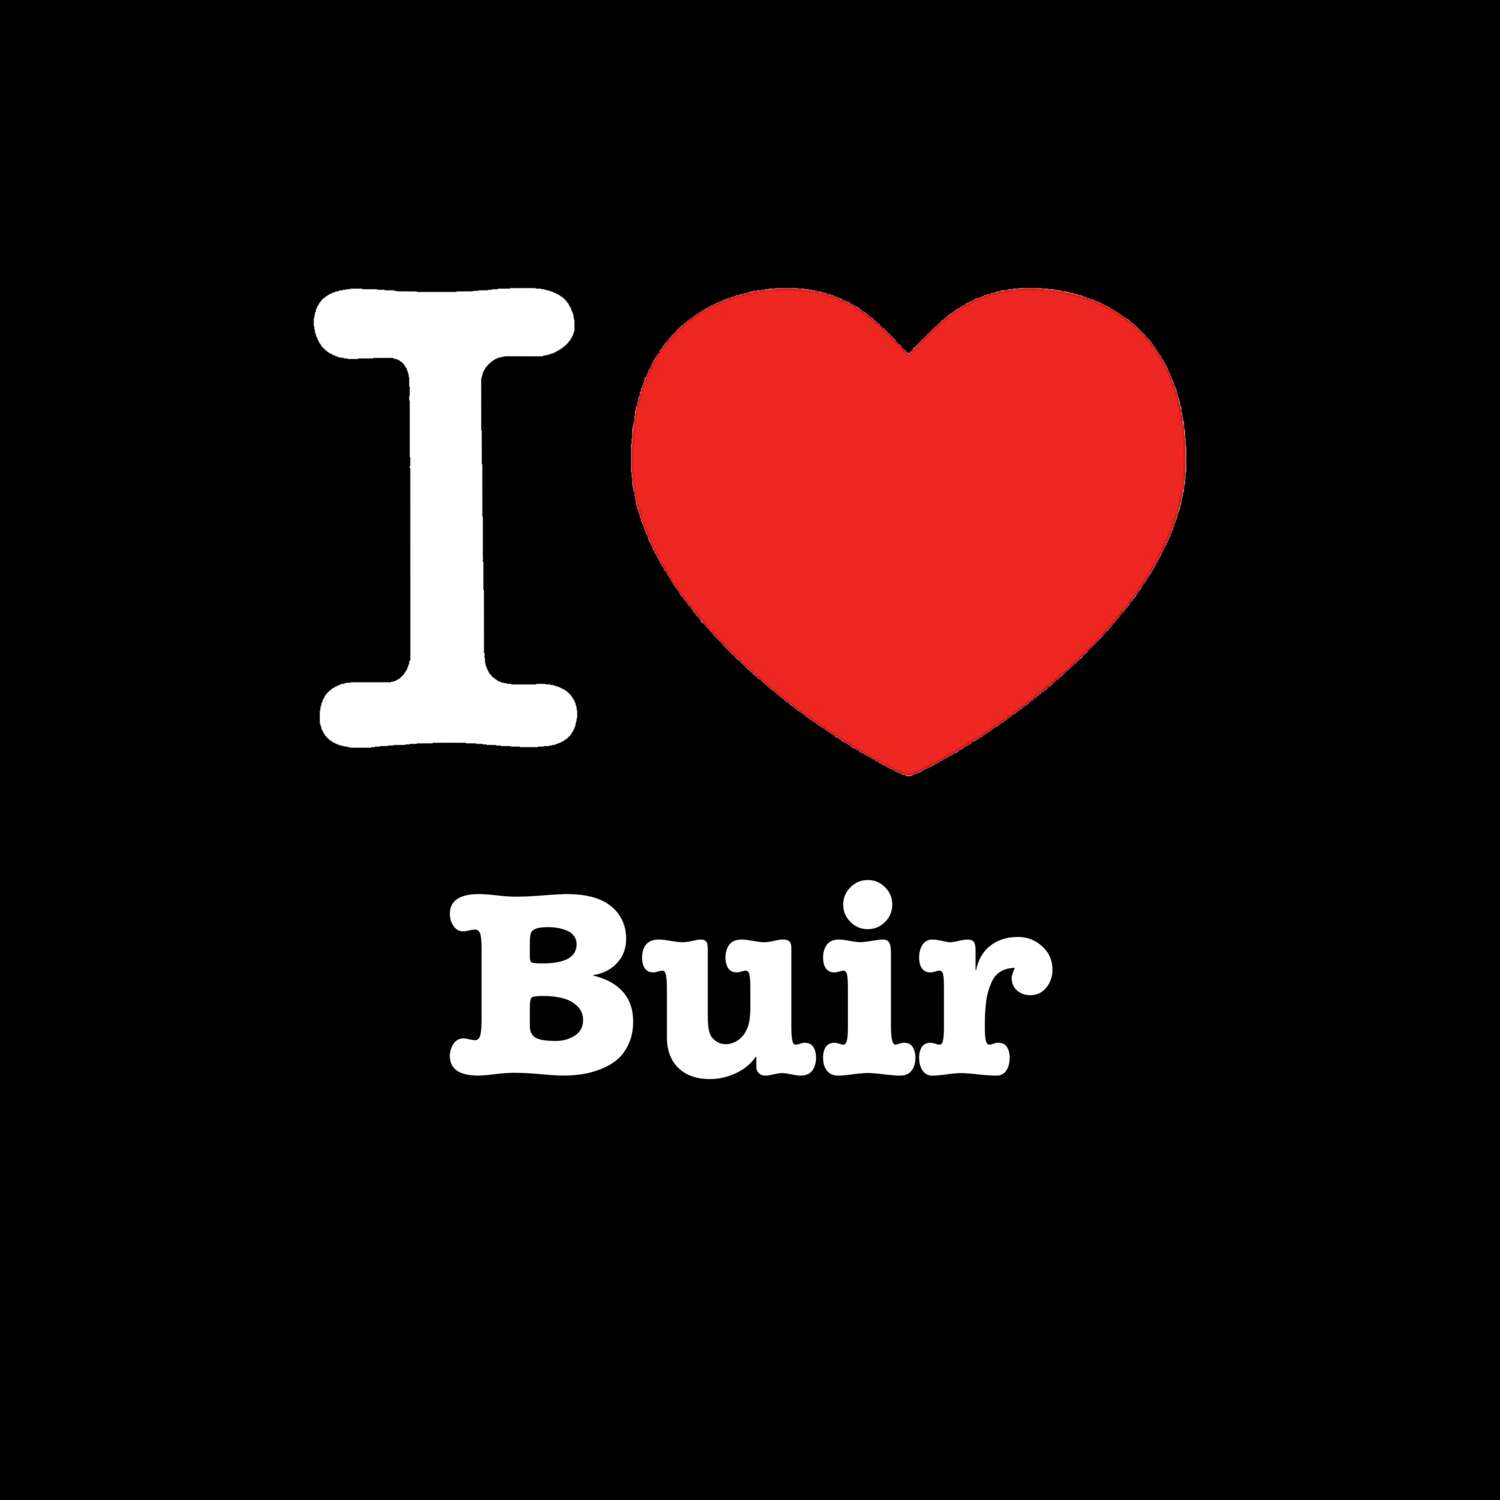 Buir T-Shirt »I love«